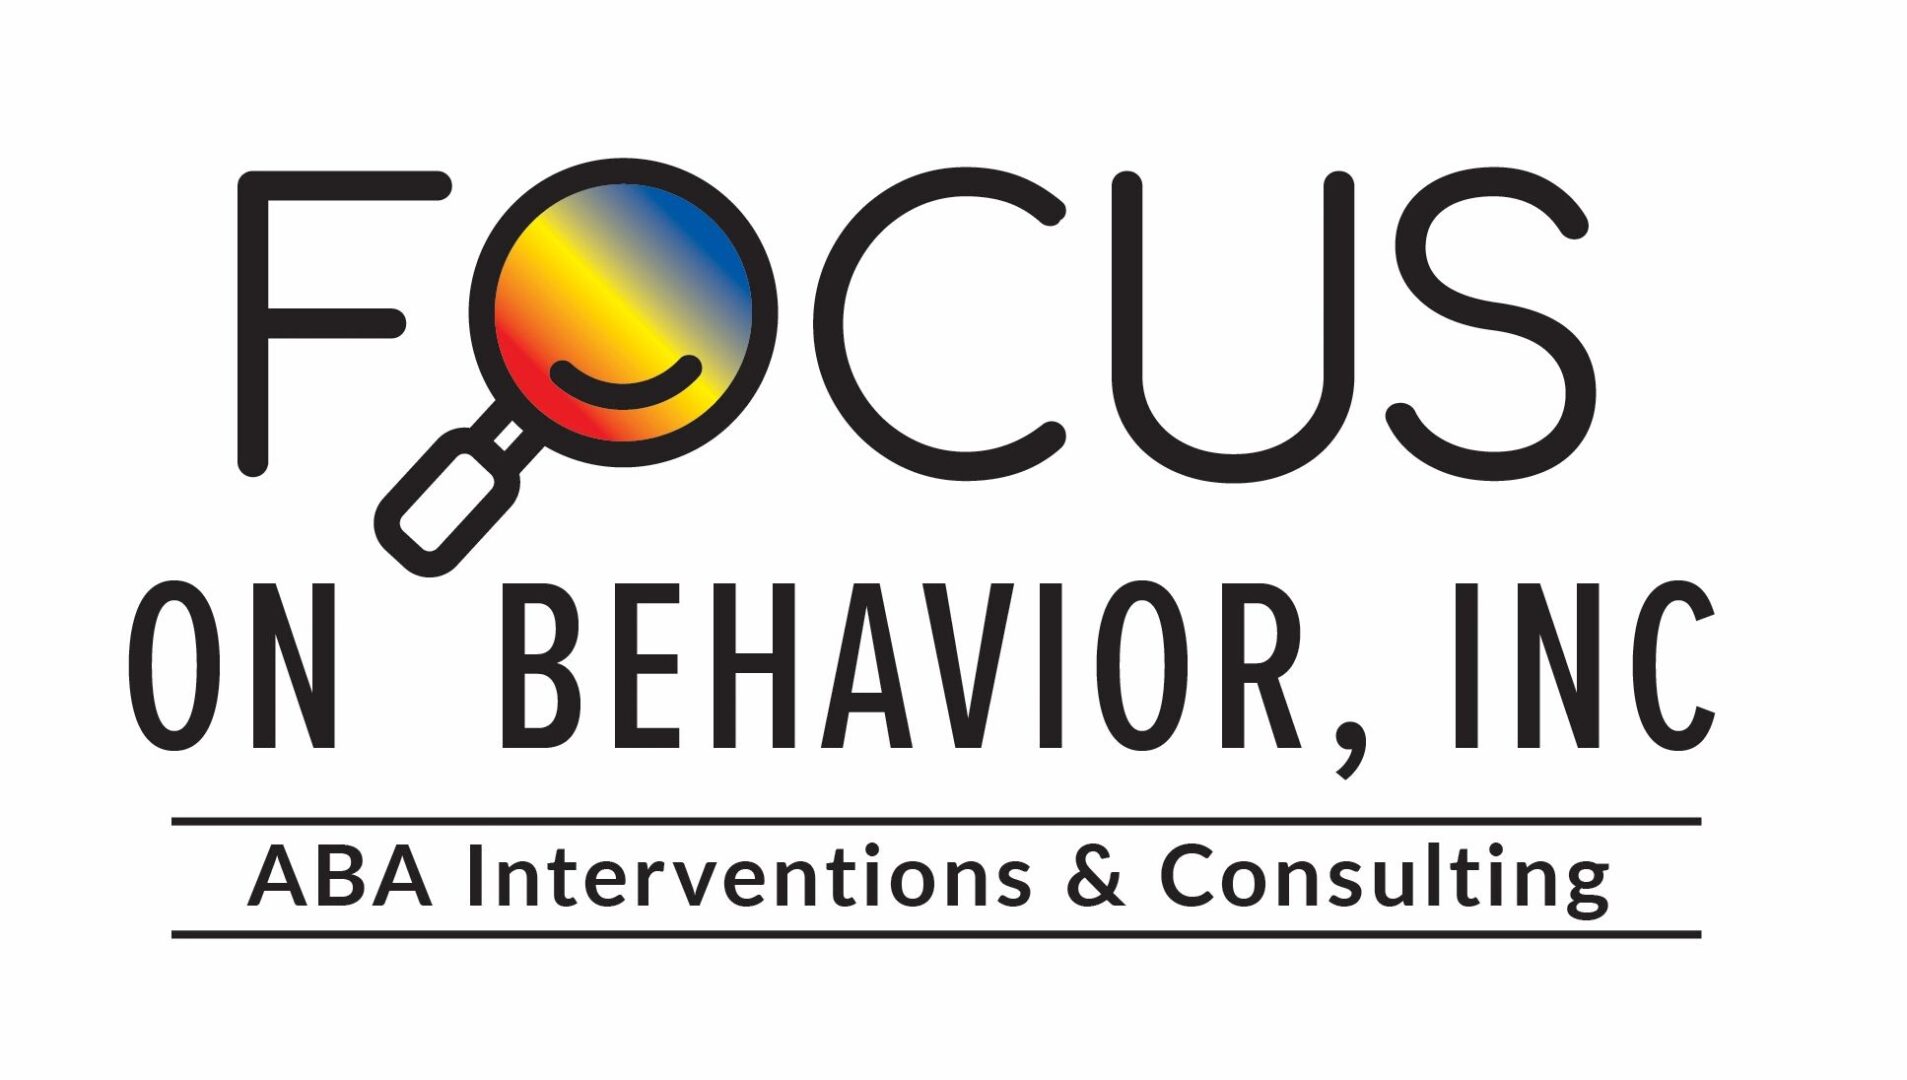 A logo for focus behavior, inc.